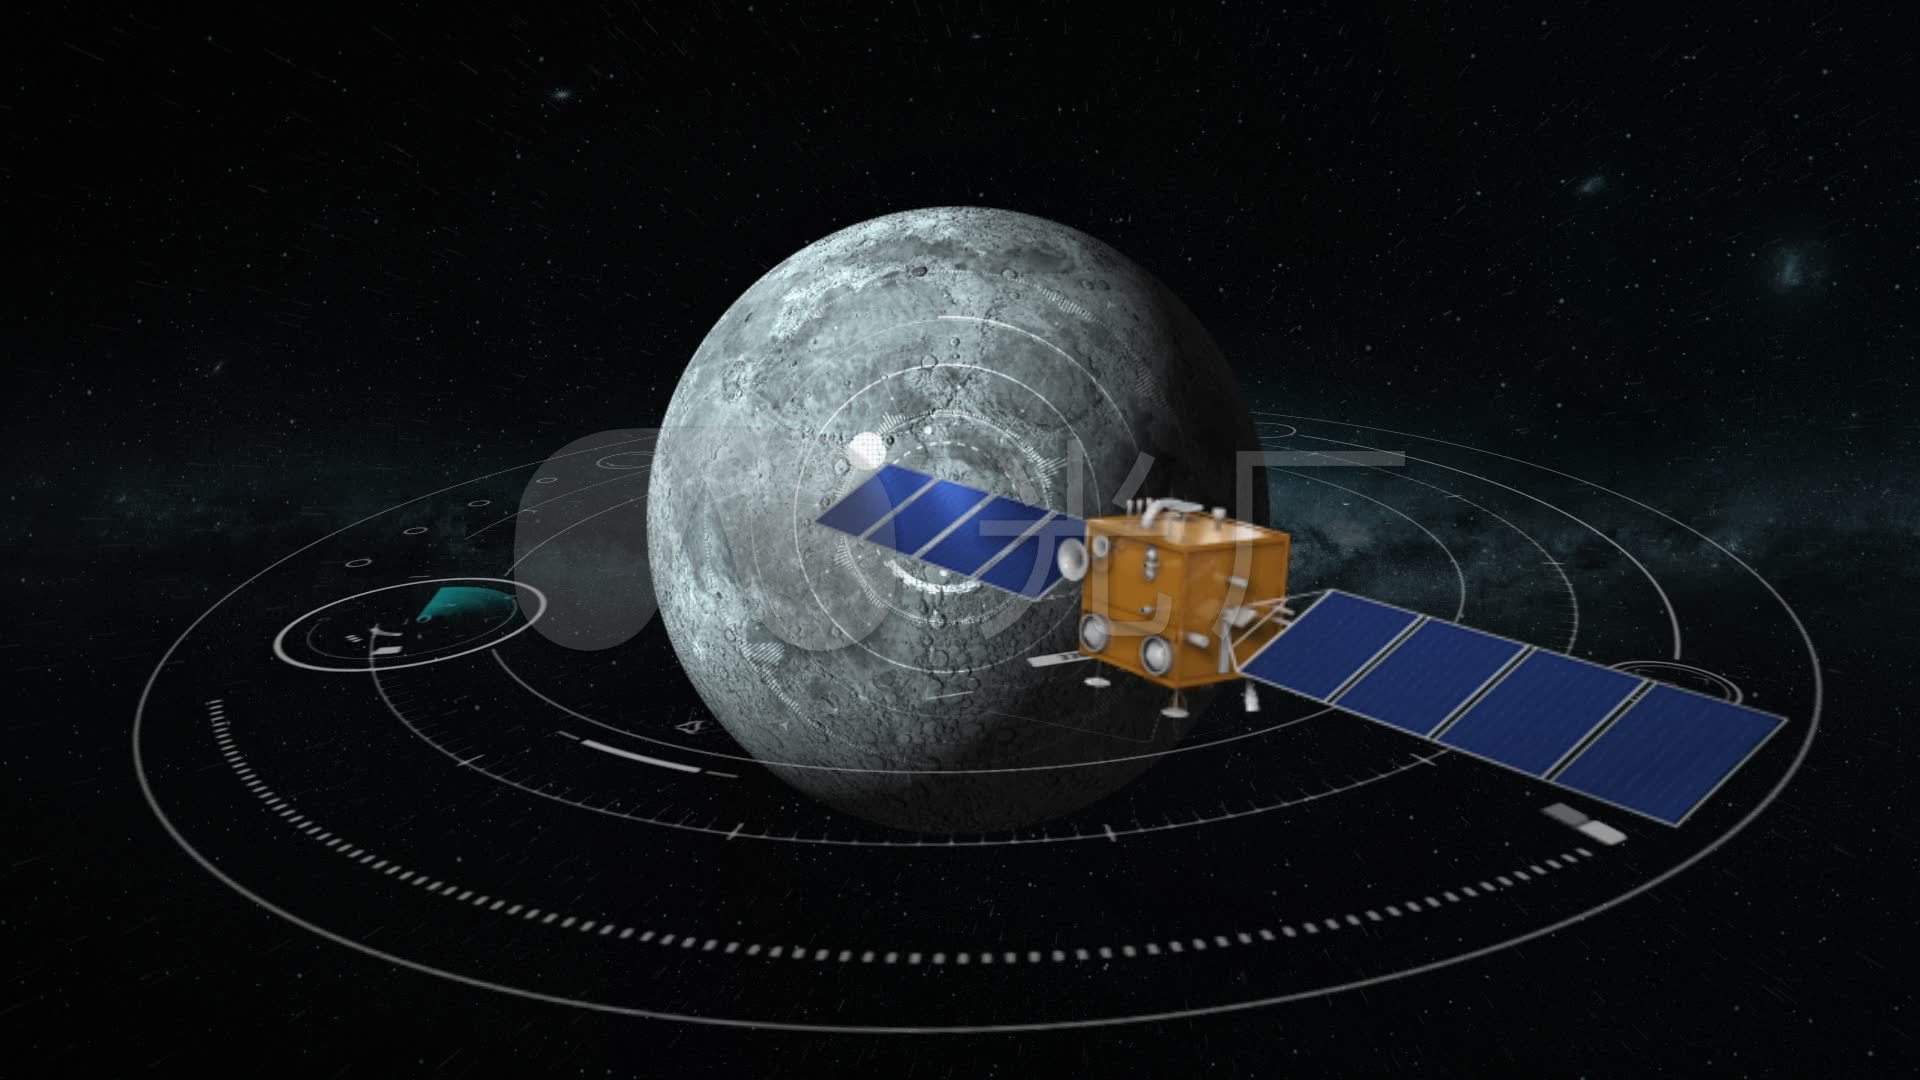 嫦娥五号轨道器和返回器组合体实施第二次月地转移入射